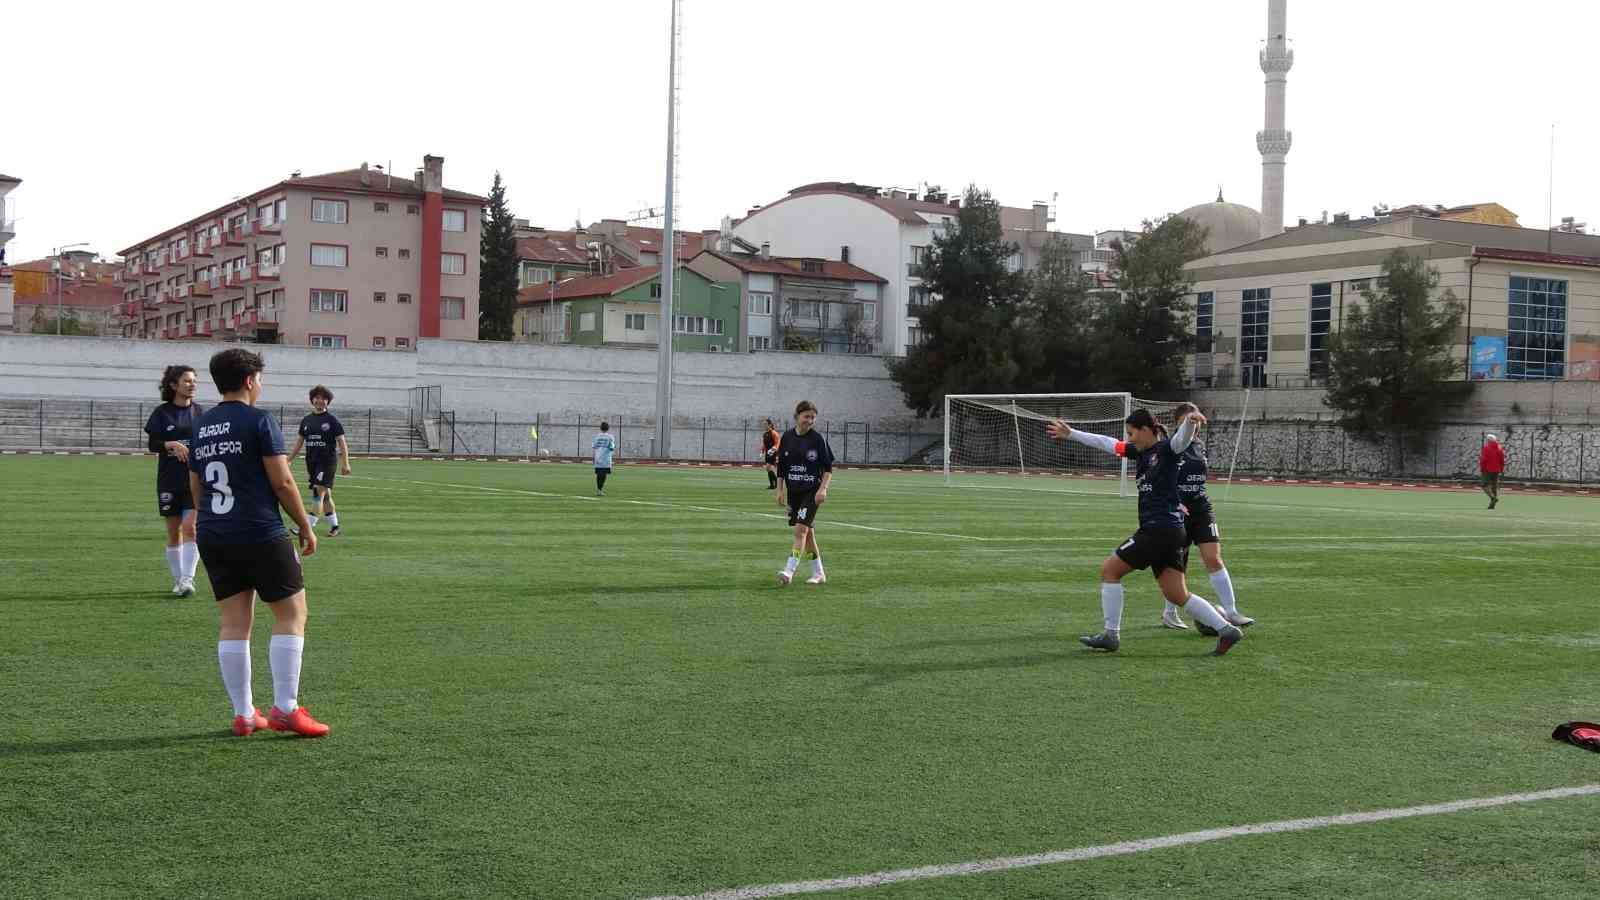 Burdur Gençlik ve Spor Kadın Futbol Takımı ilk maçta hükmen galip geldi